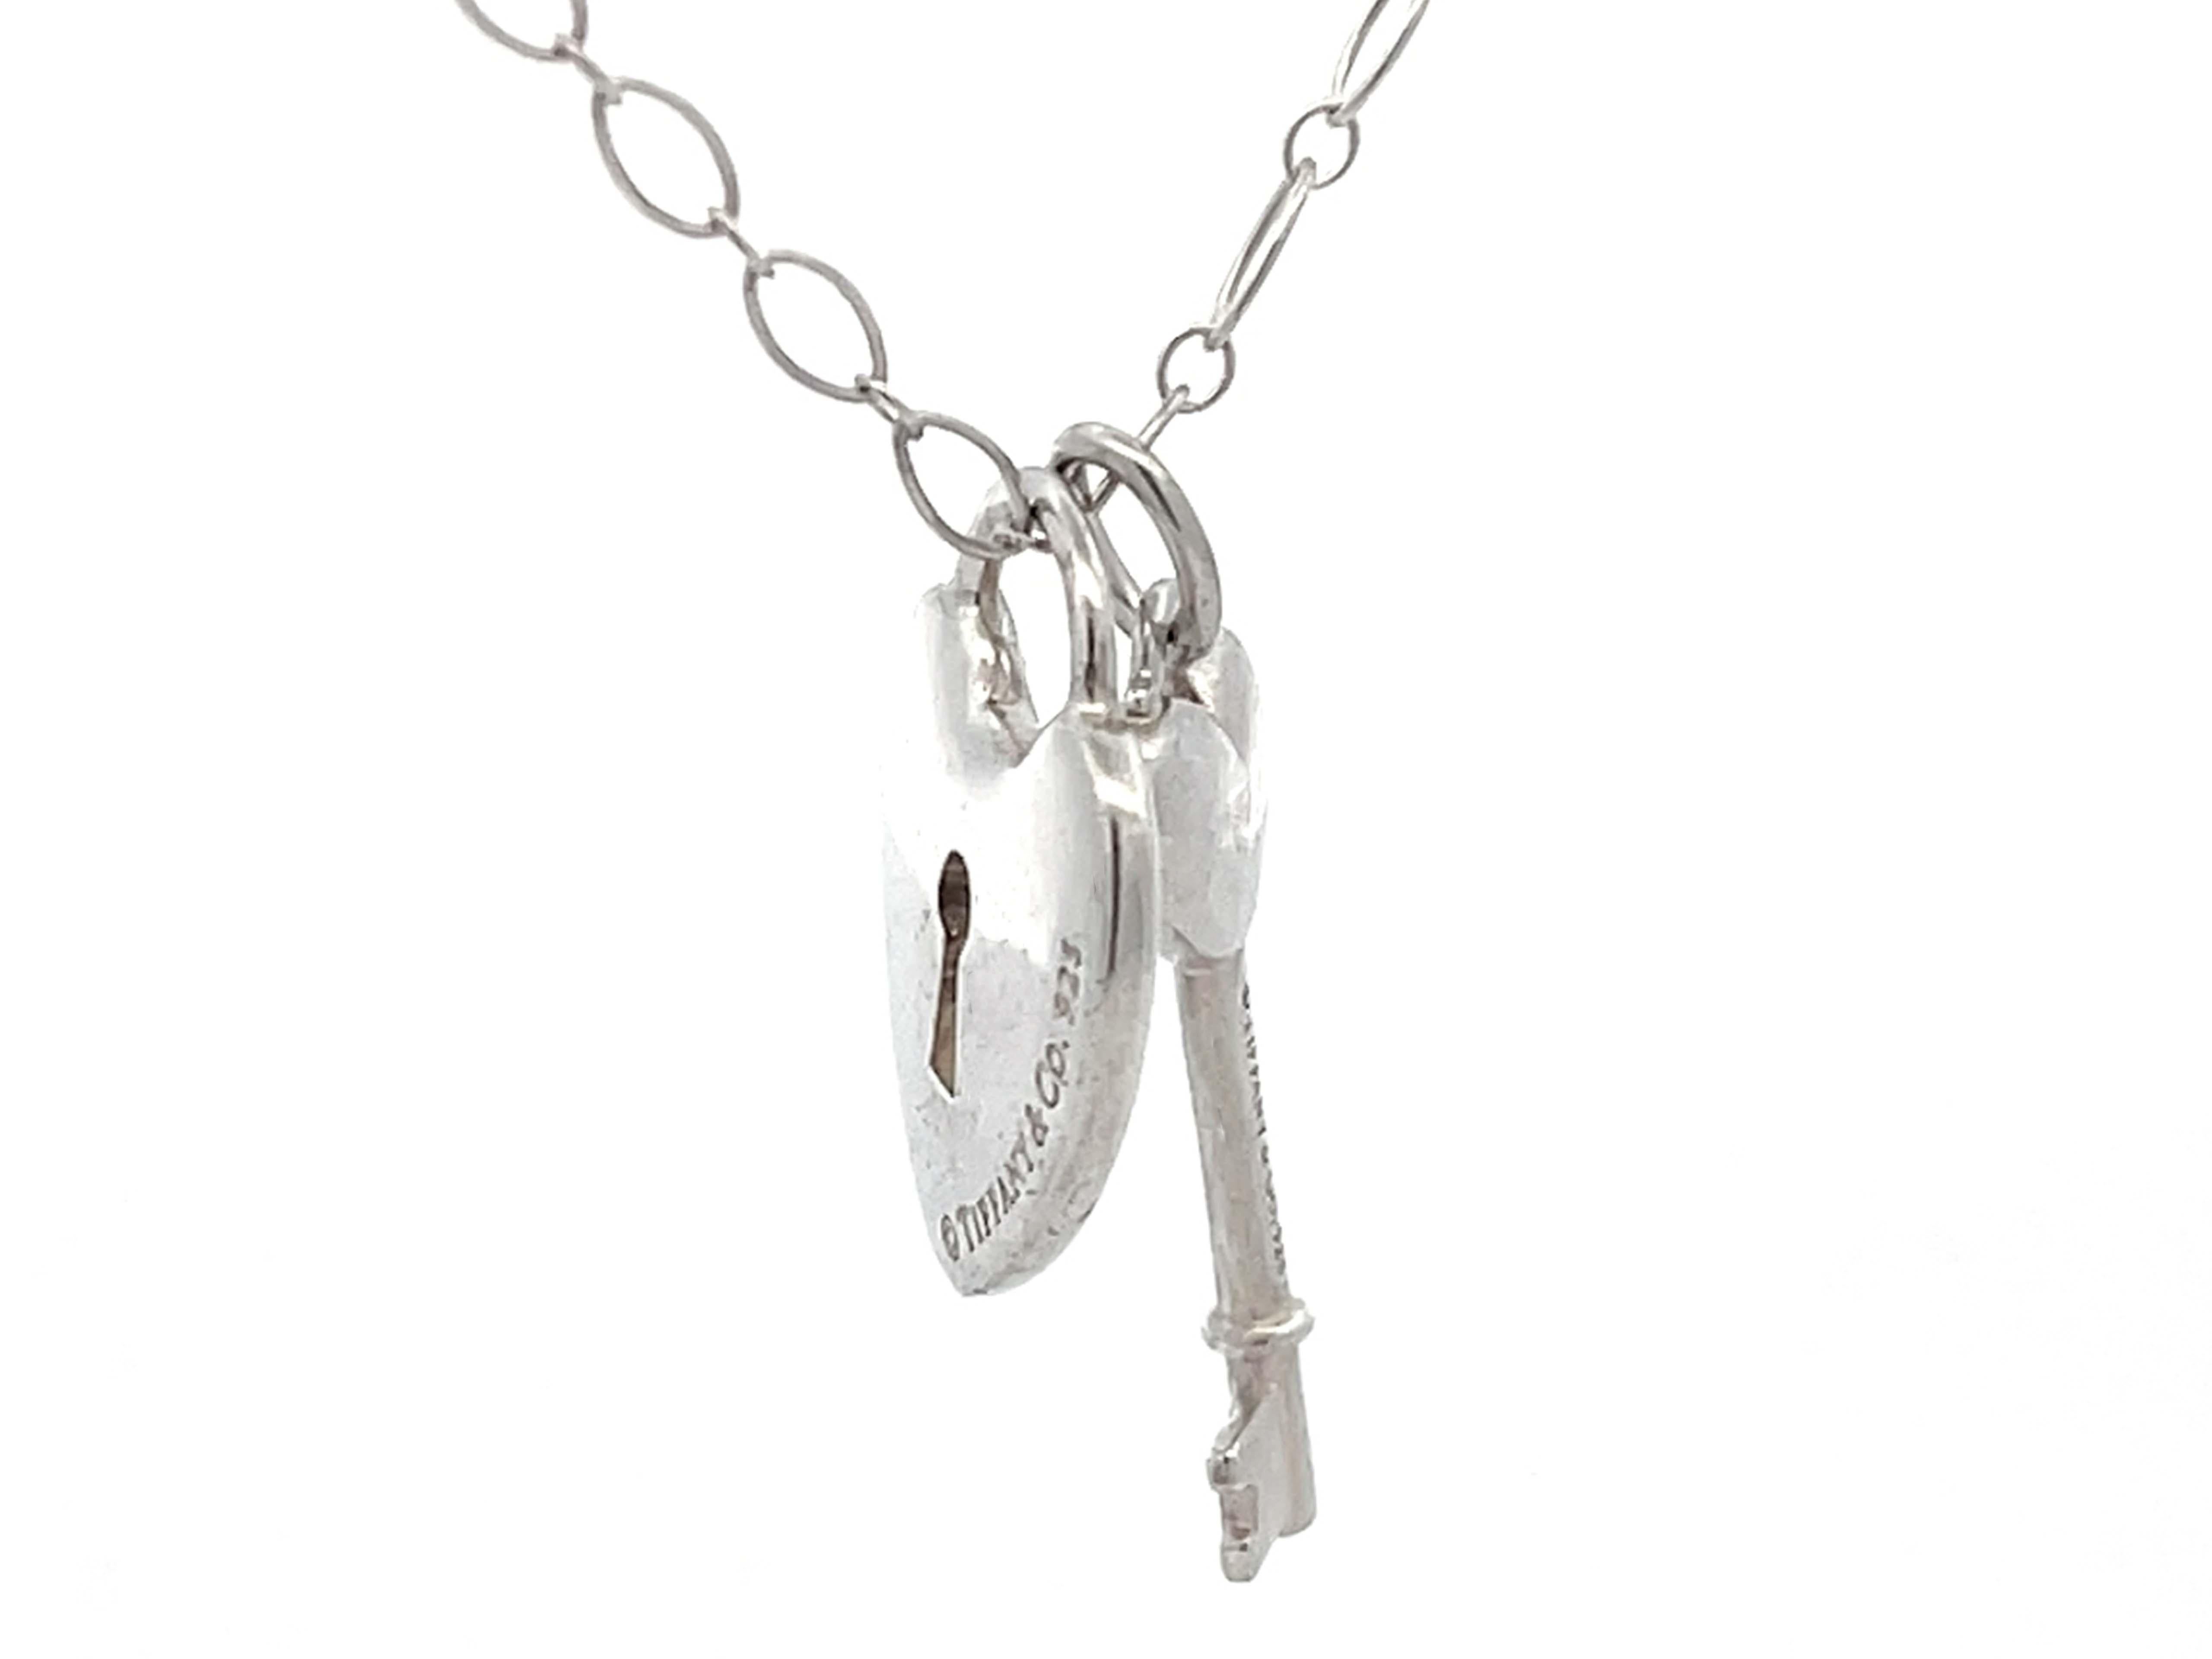 tiffany necklace heart and key